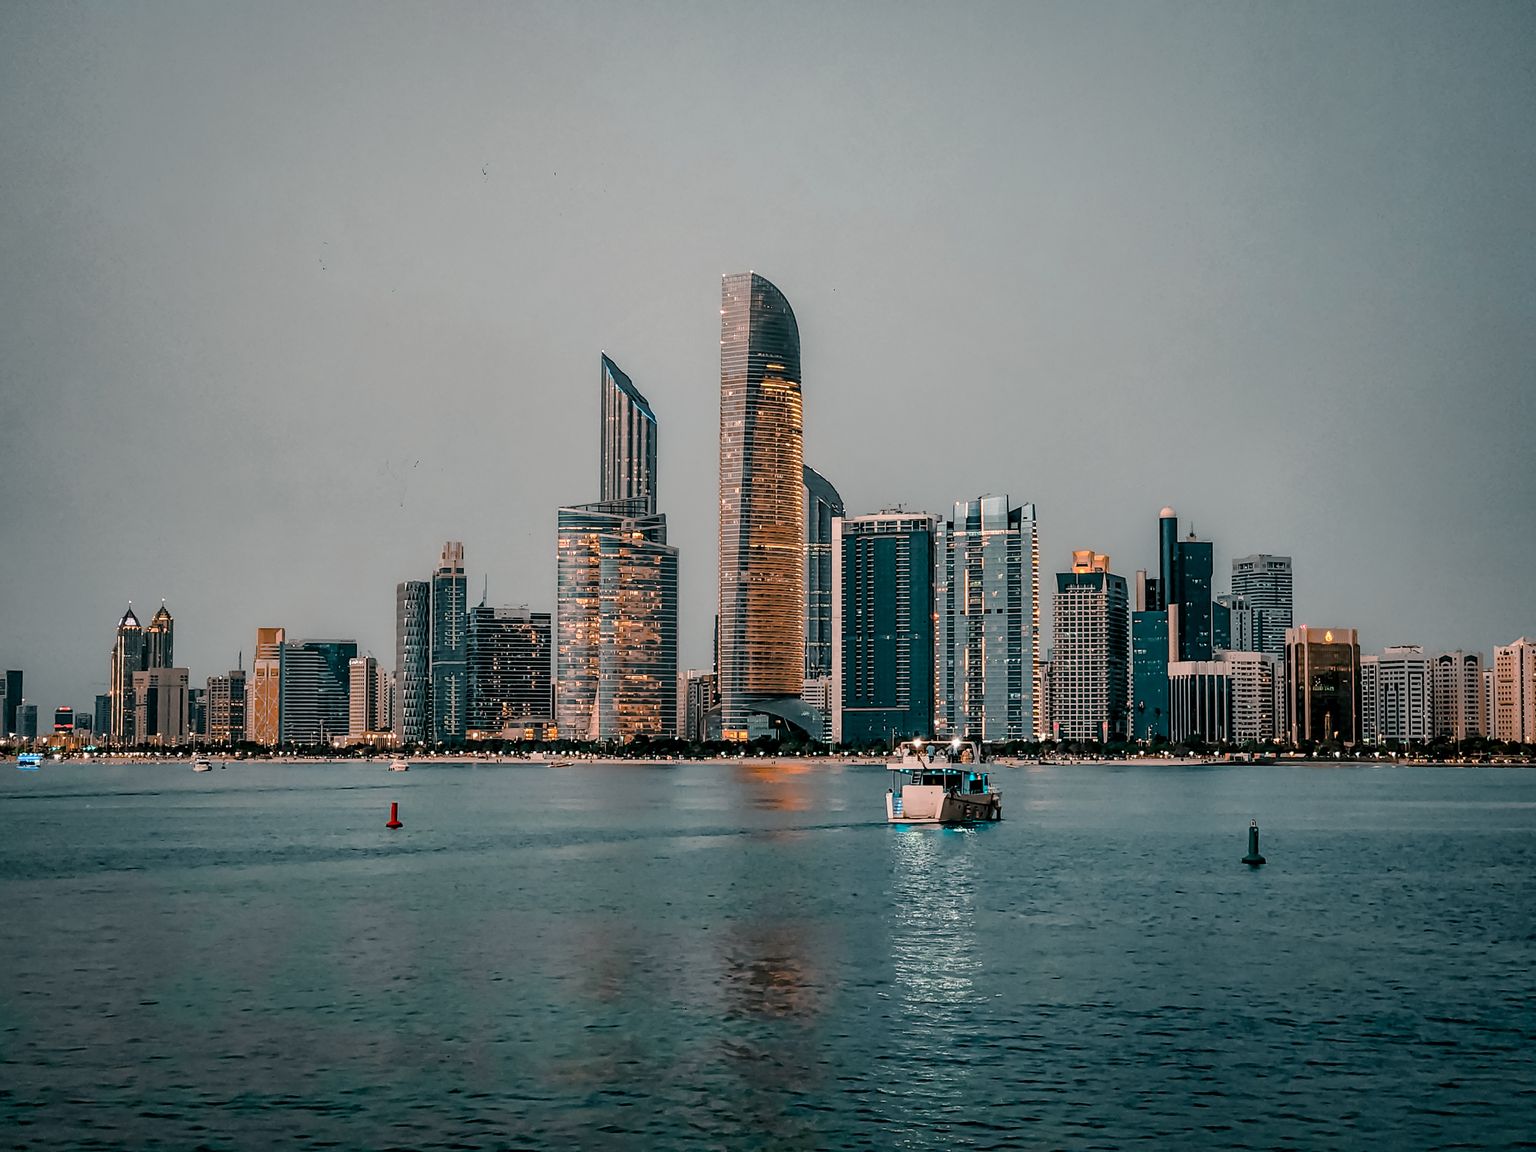 Abu Dhabi on kuulsast sõsarast Dubaist vähem pompöösne, kuid samas kogu AÜE pealinn.